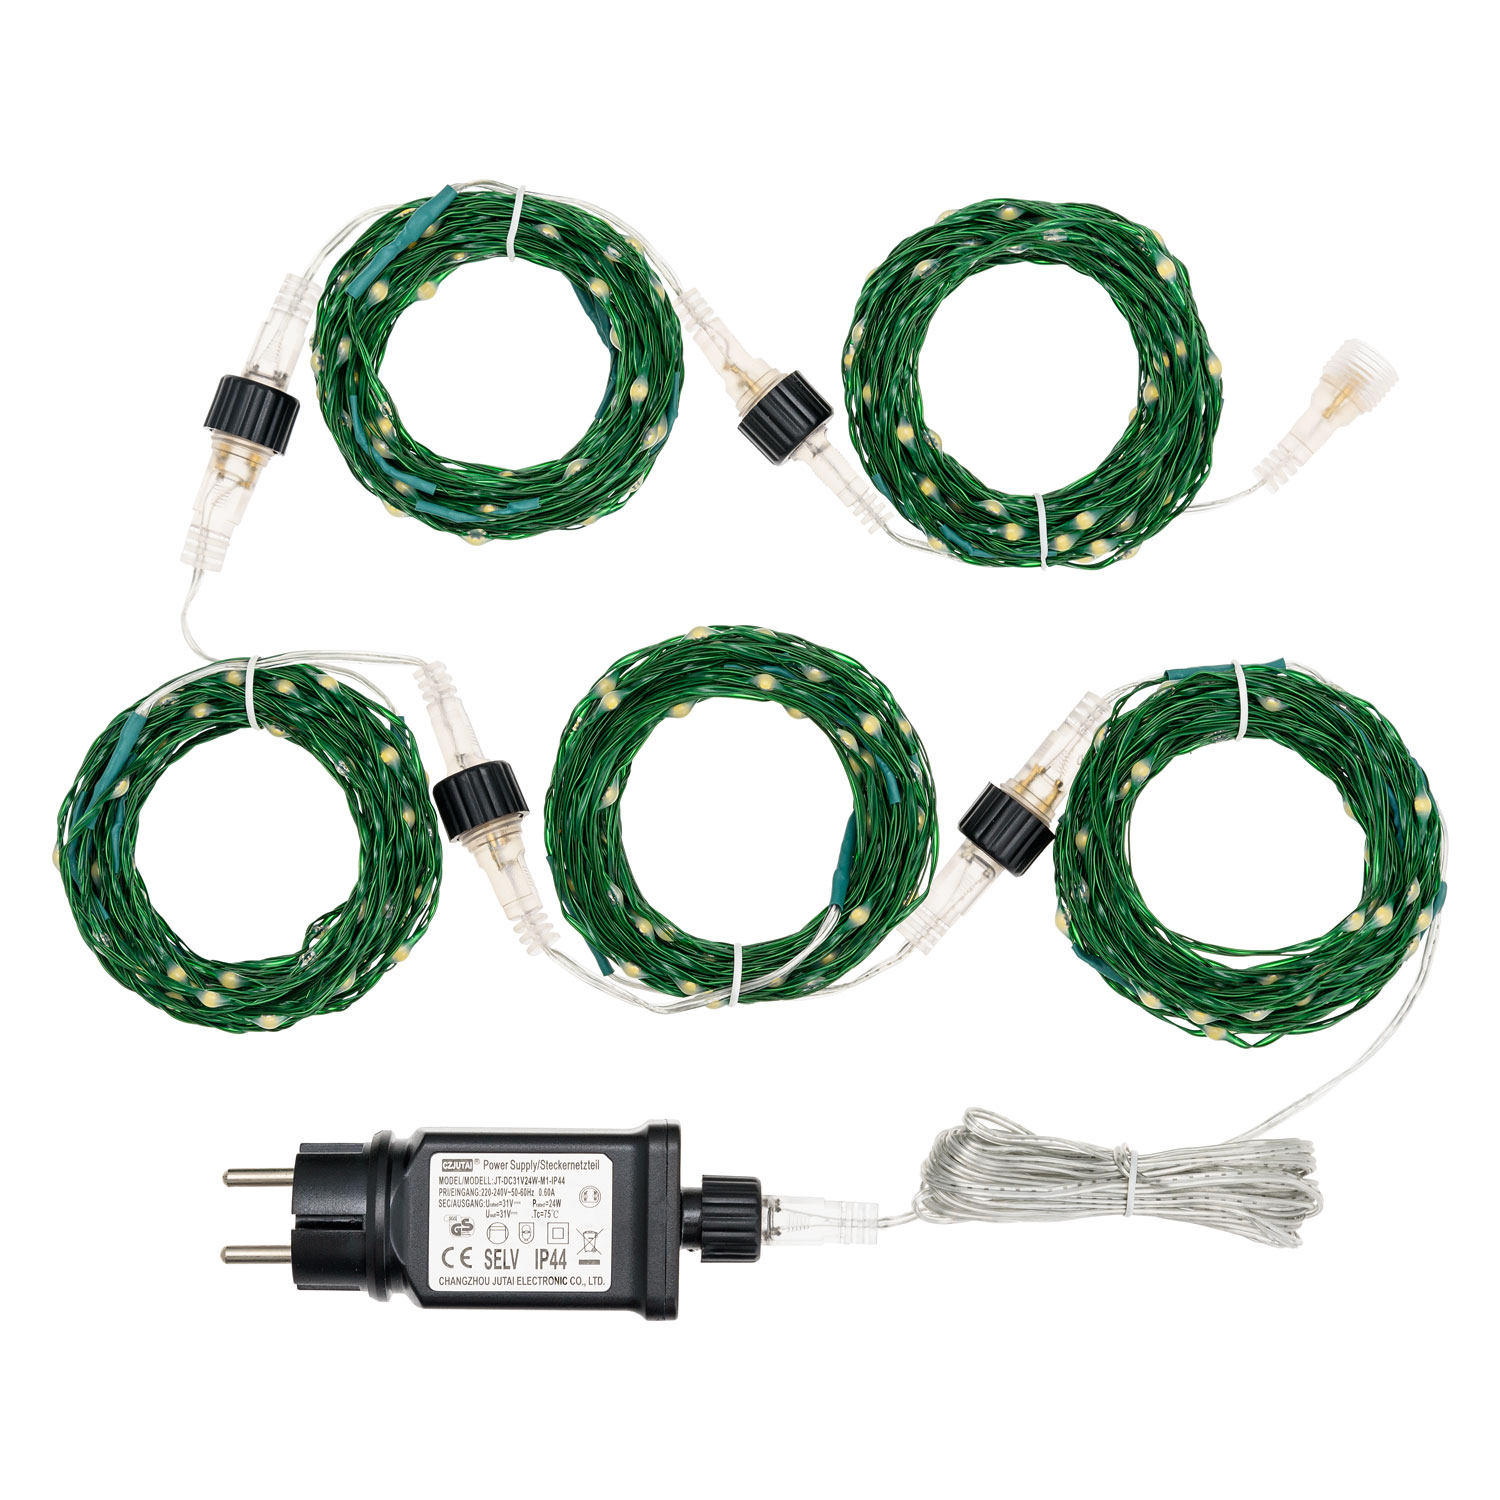 Электрогирлянда Lotti Профессионал 50 м 500 MicroLEDS зеленый кабель, цвет теплый белый - фото 6